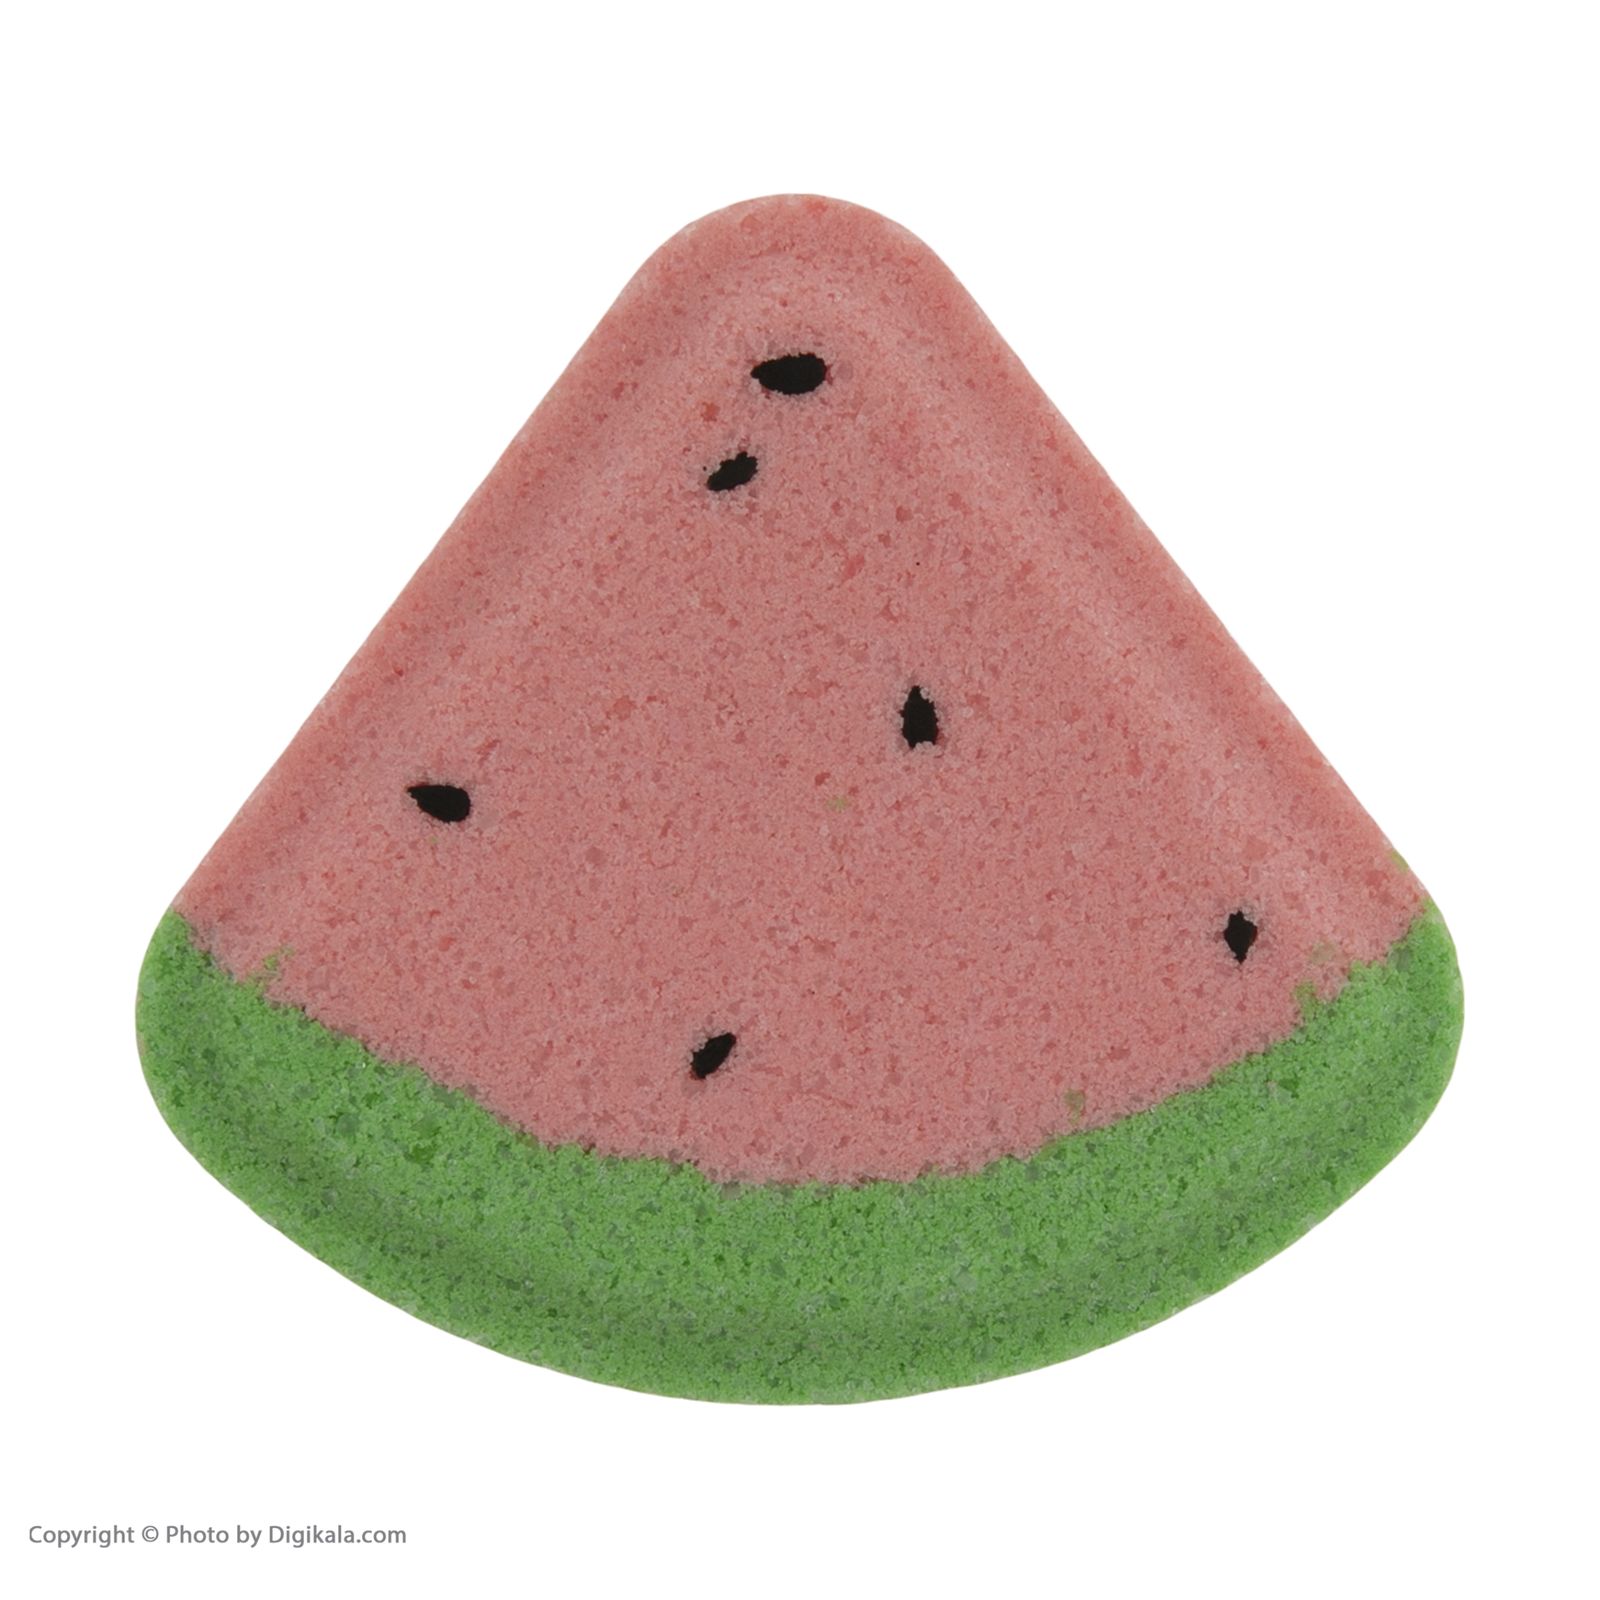 کوکتل پدیکور ژبن پلاس مدل Watermelon وزن 480 گرم بسته 8 عددی -  - 4